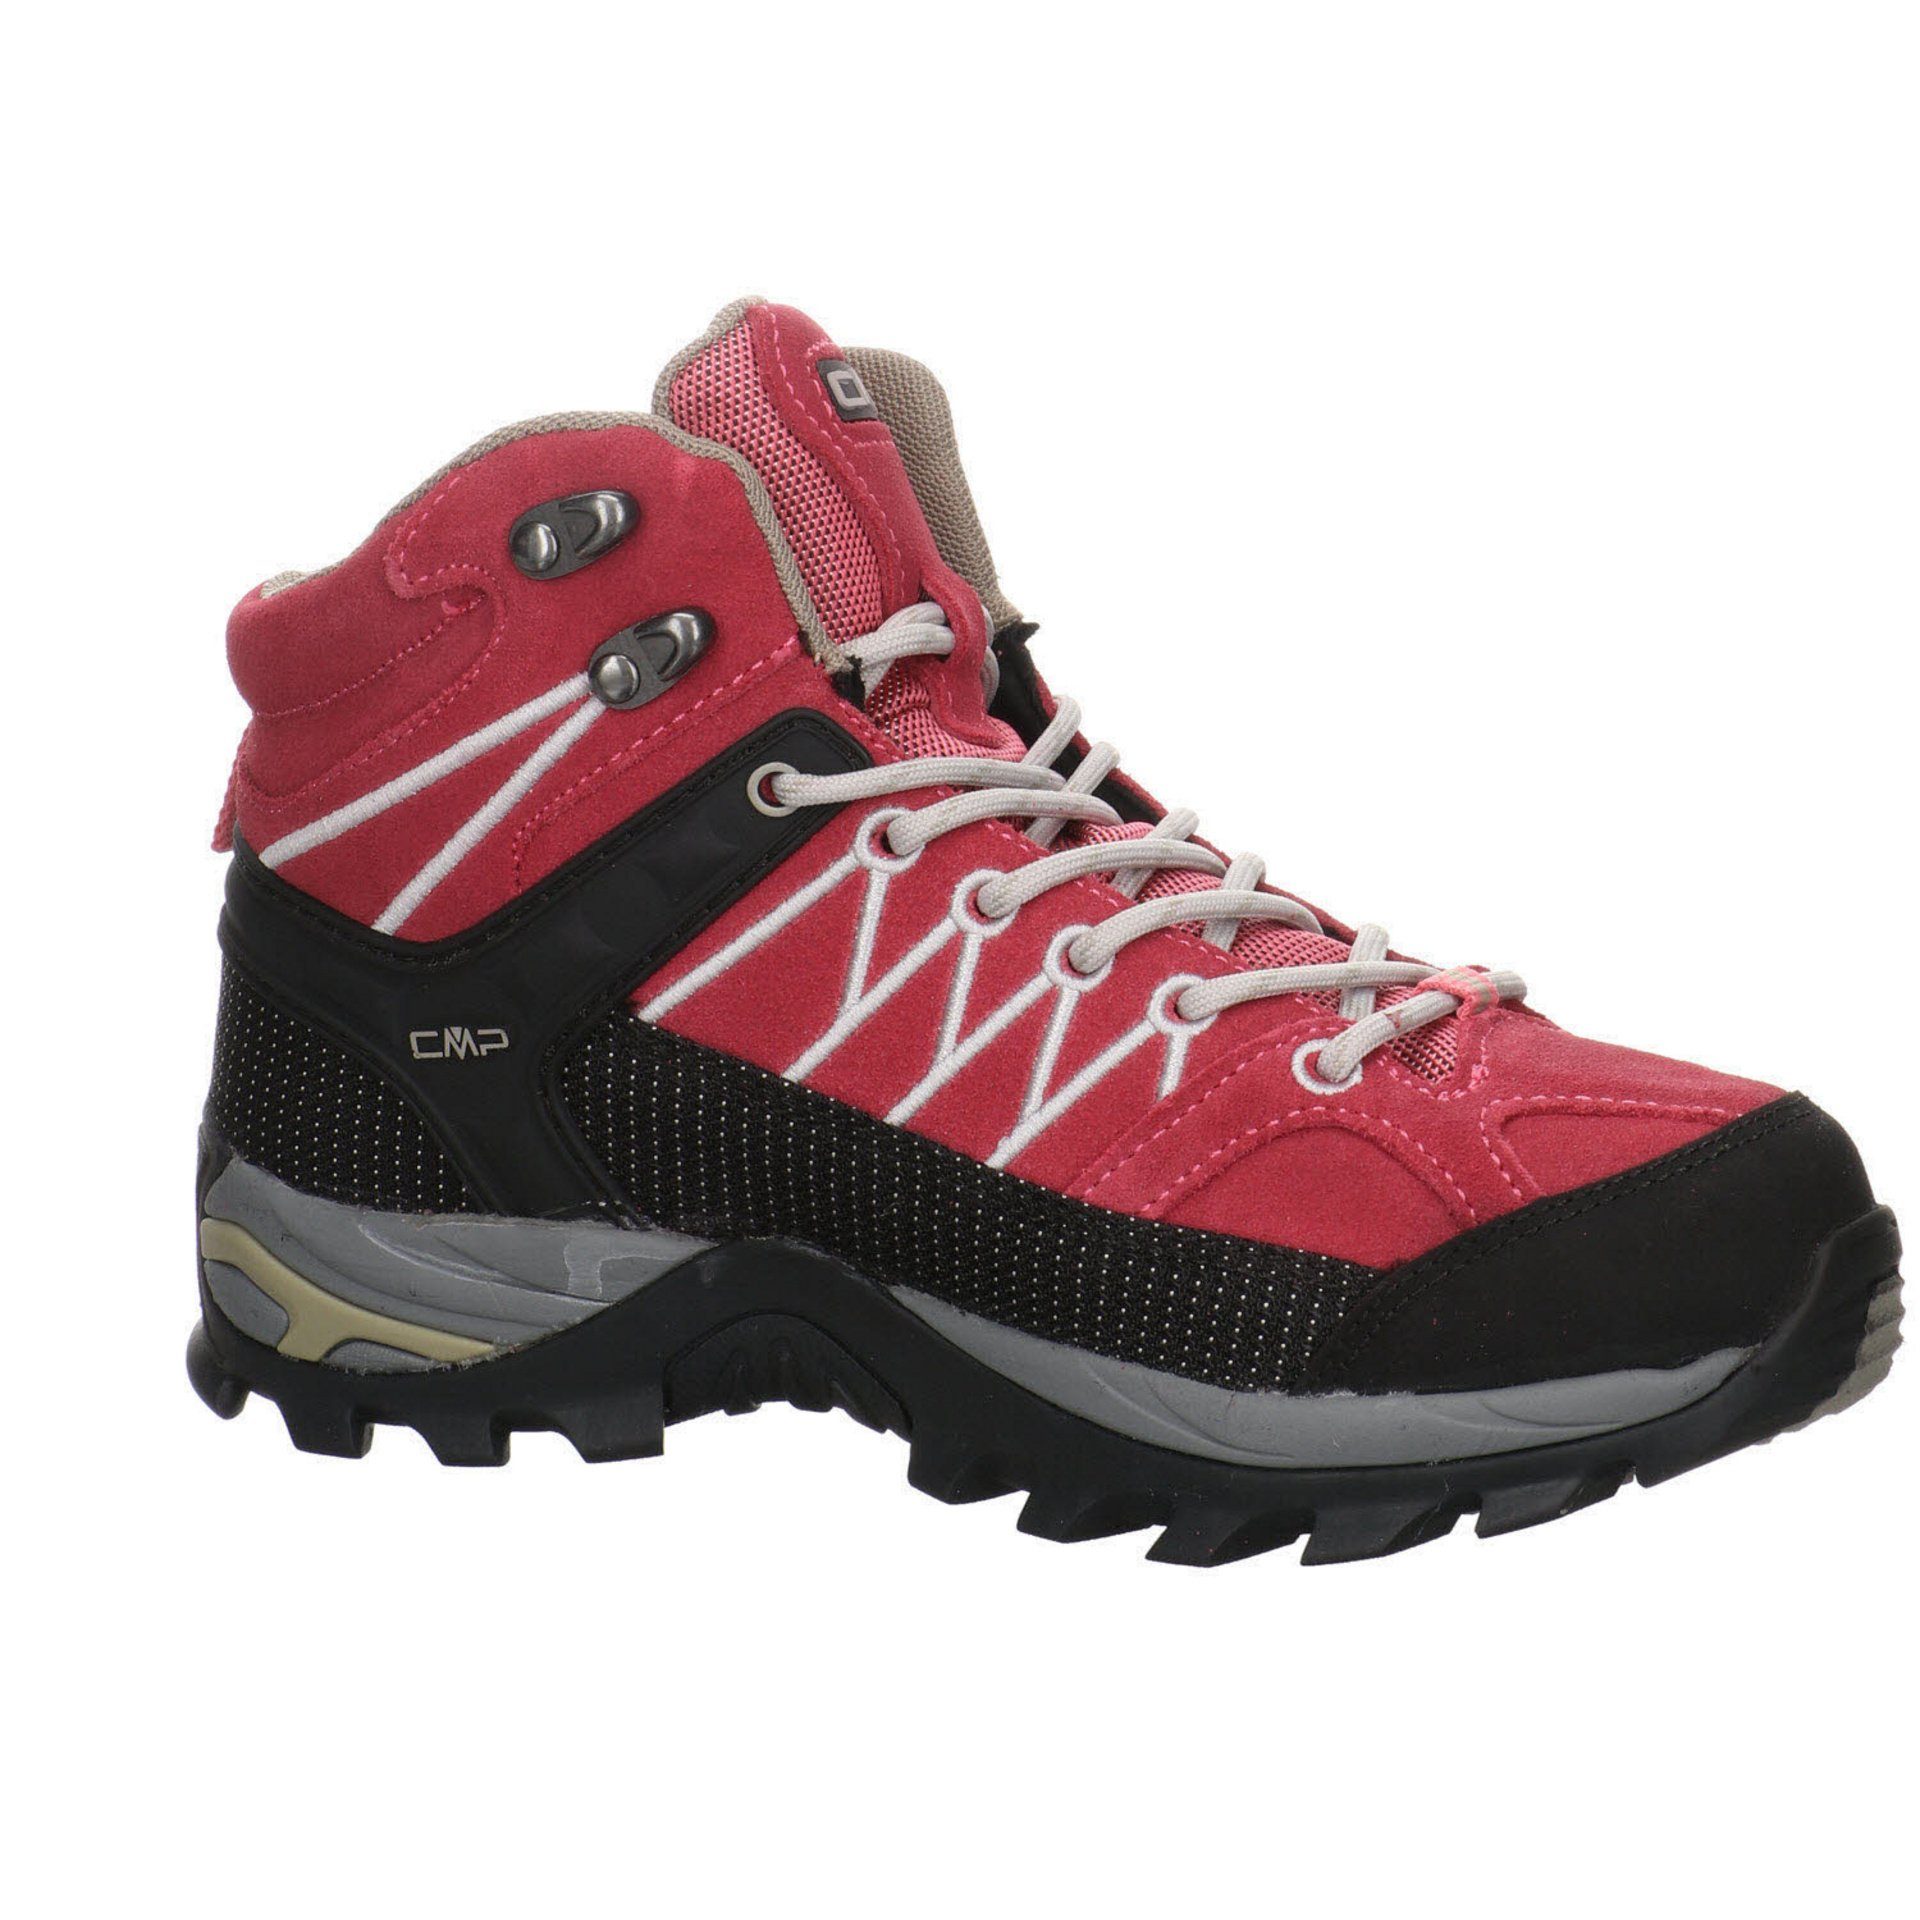 Schuhe Outdoorschuh Leder-/Textilkombination Outdoor Rigel ROSE-SAND Damen Mid CMP Outdoorschuh